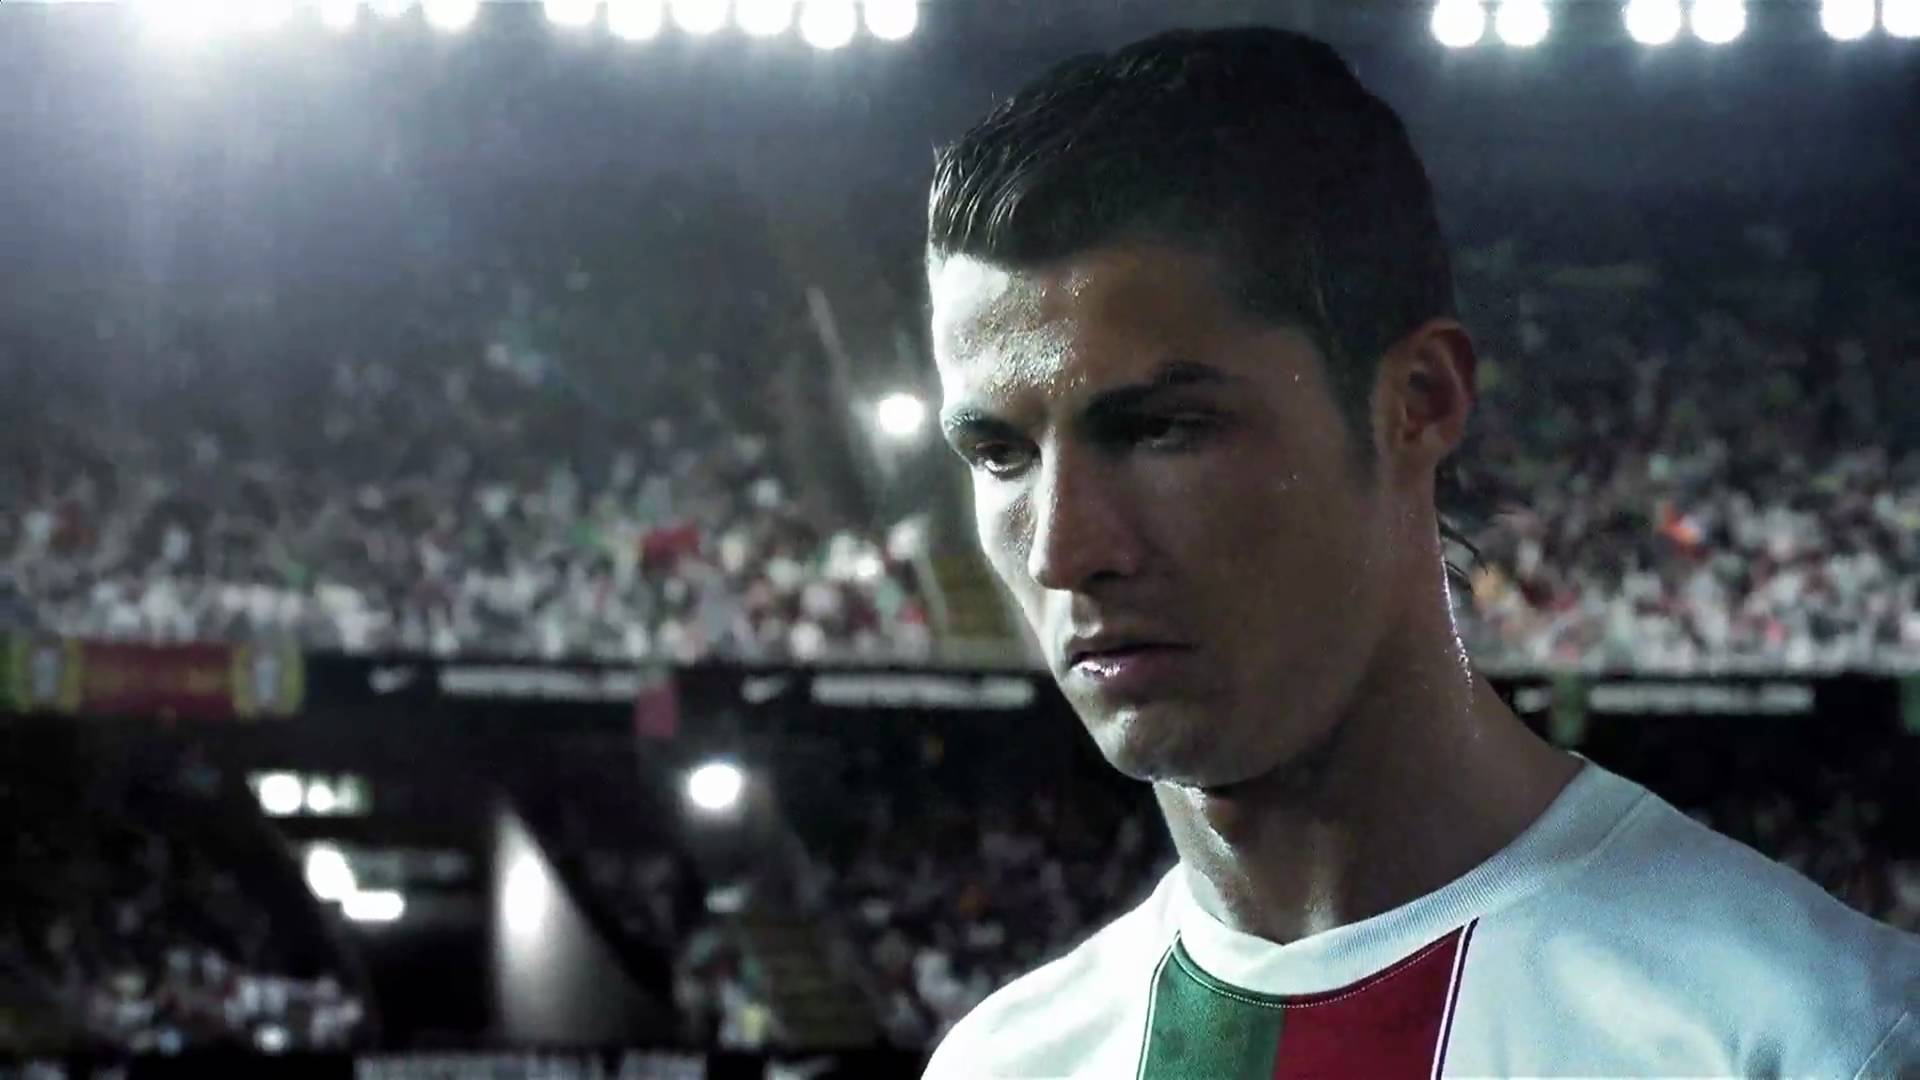 Download Cristiano Ronaldo Portugal 2015 Photo. HD Wallpaper